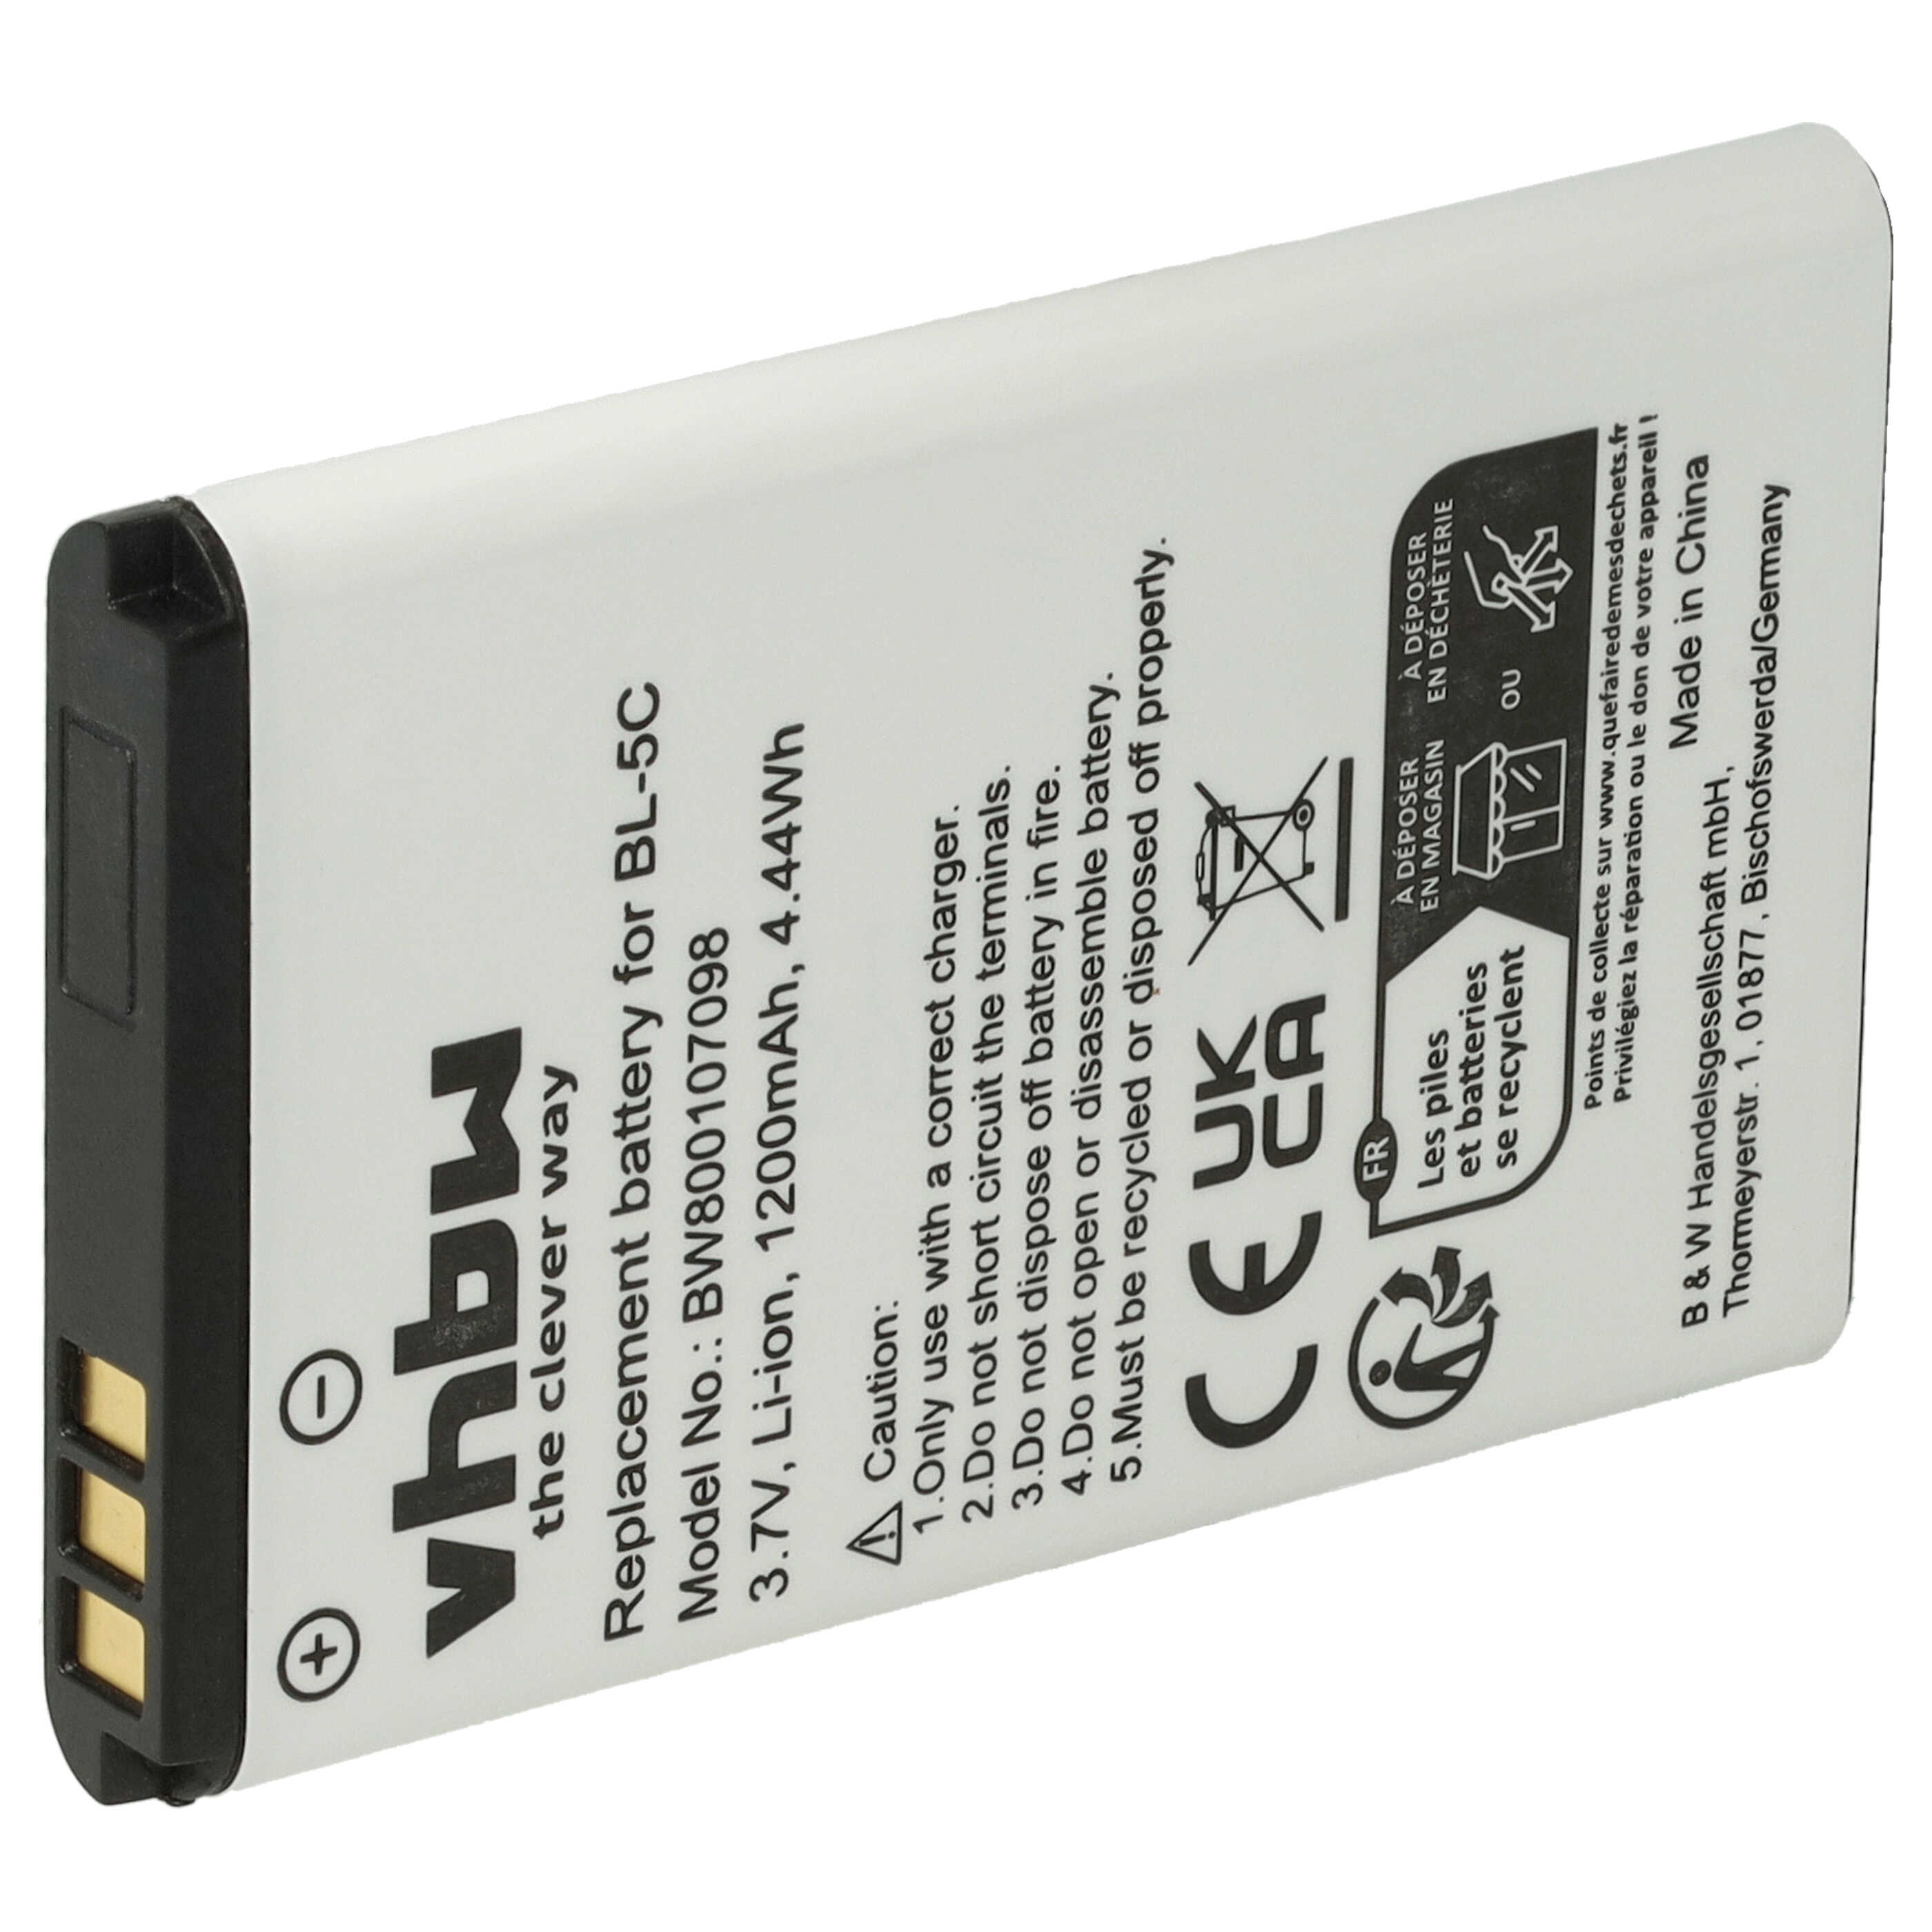 Batterie remplace Alcatel 3BN67332AA, 10000058, RTR001F01 pour téléphone portable - 1200mAh, 3,7V, Li-ion